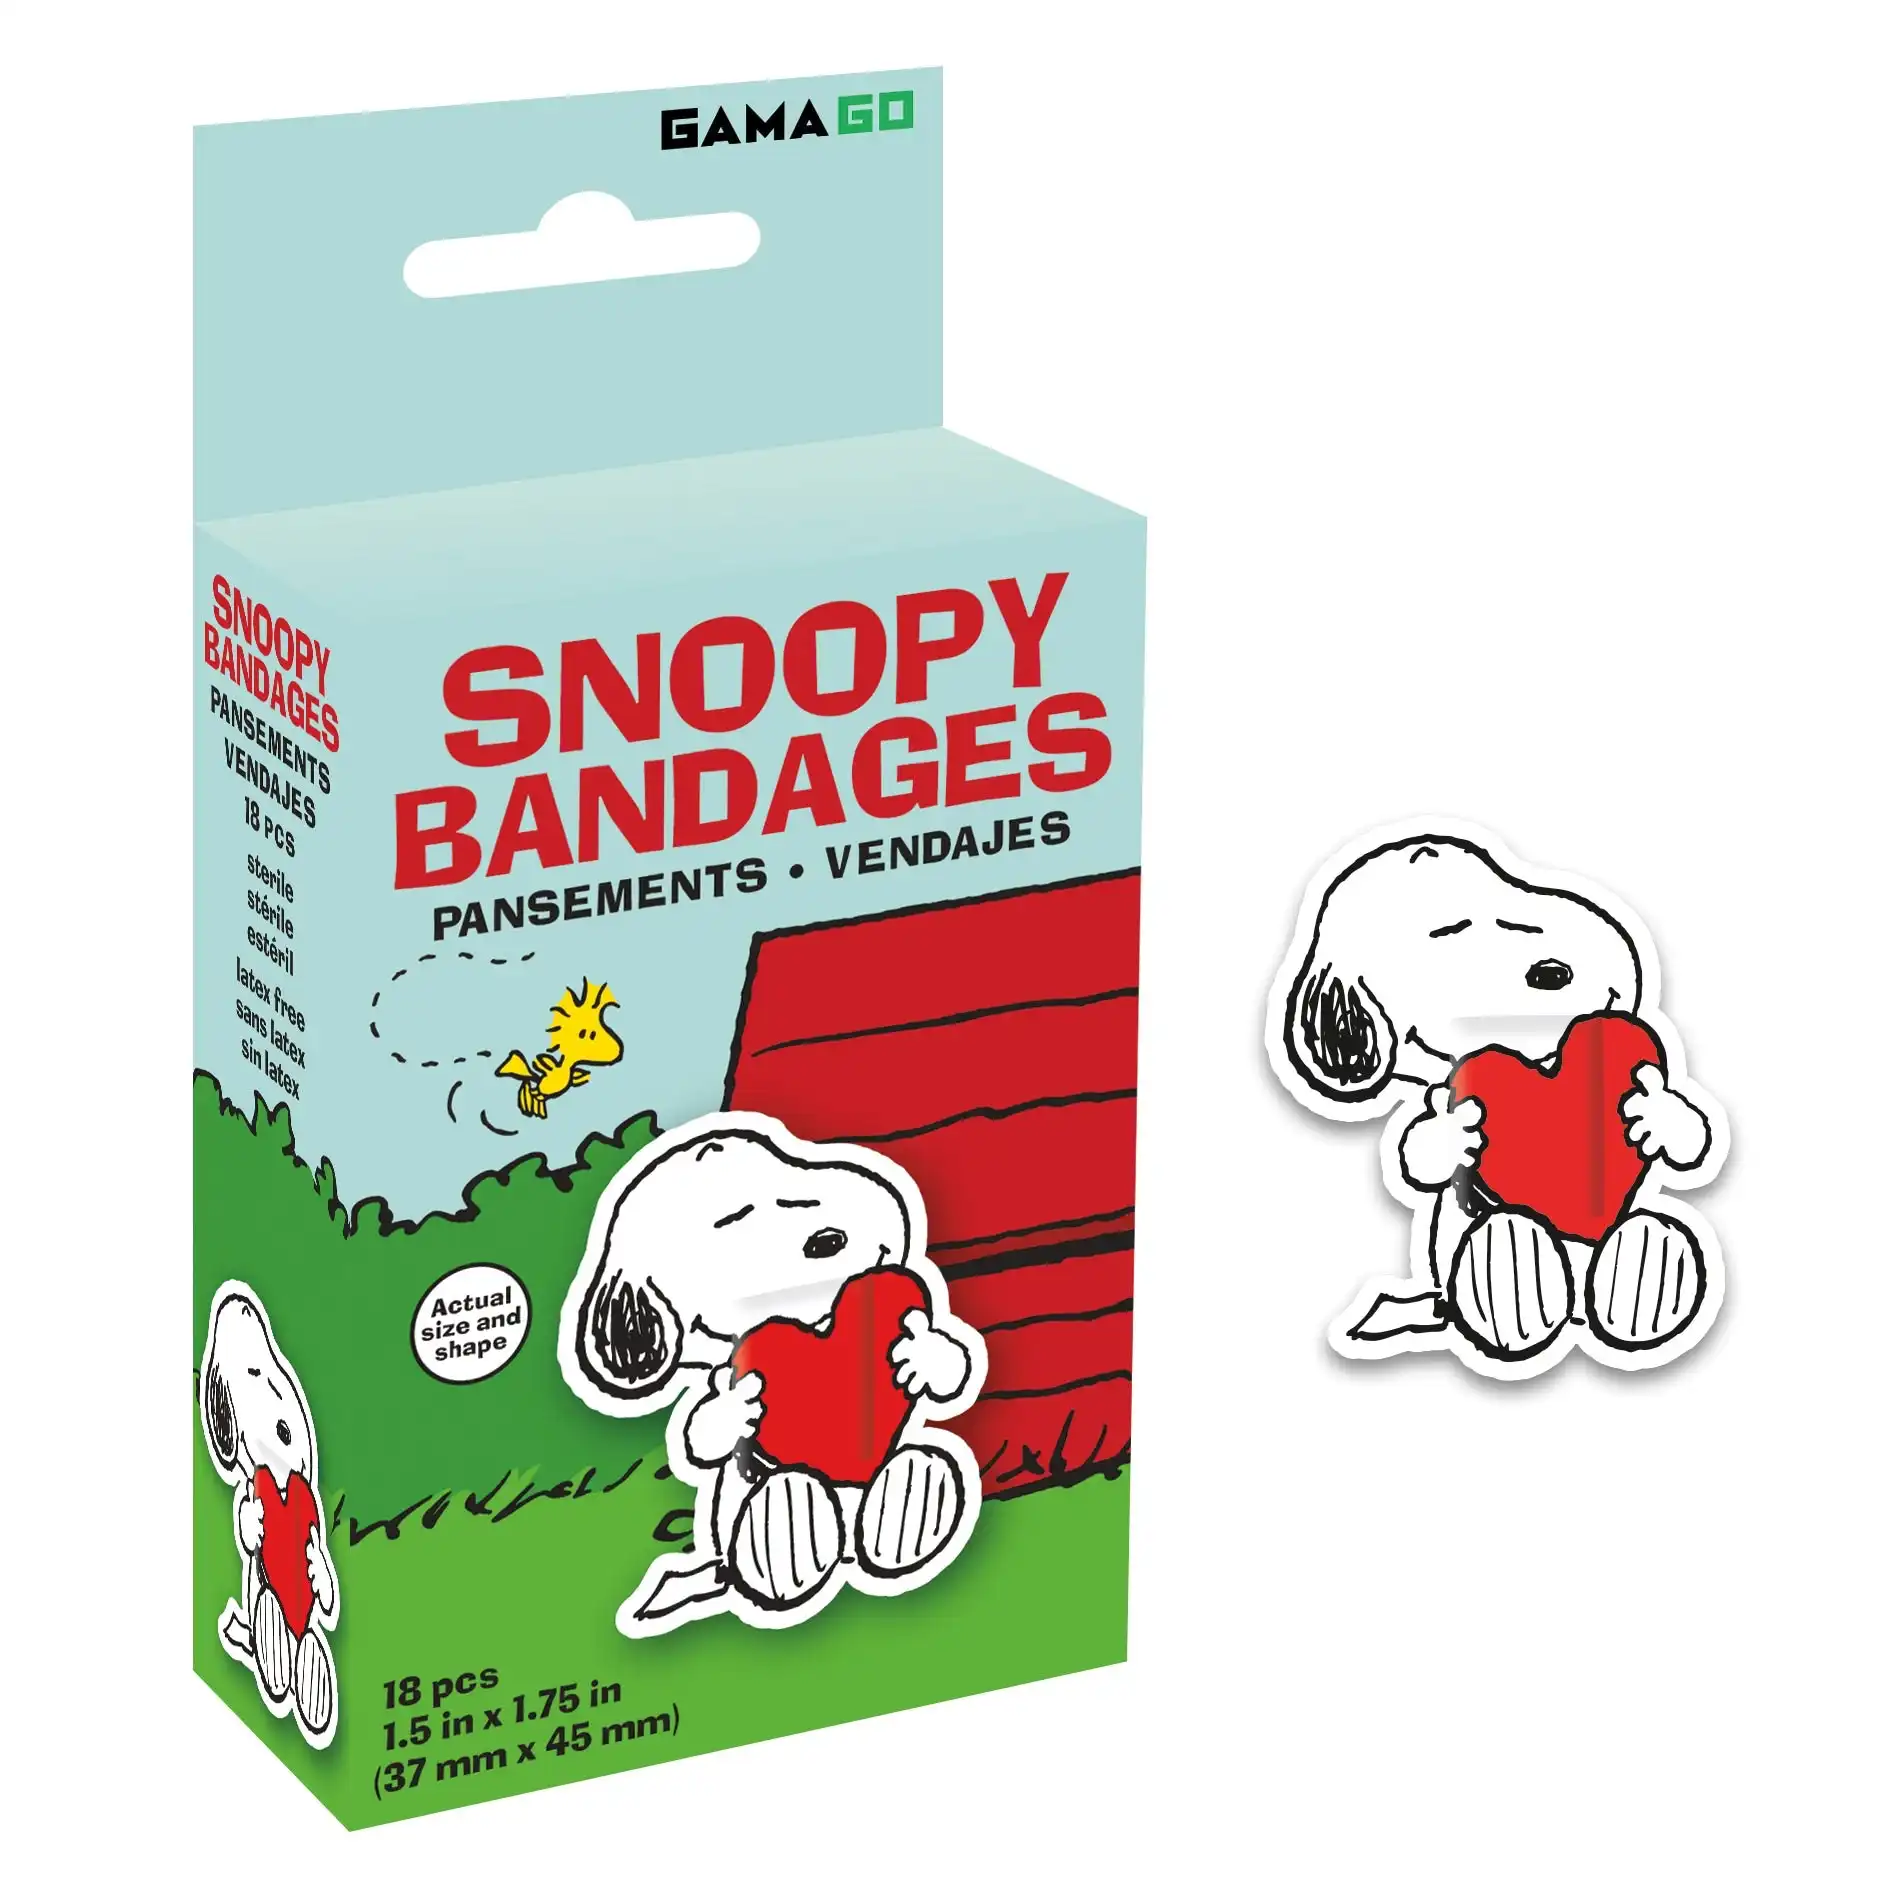 Gamago - Snoopy Bandages